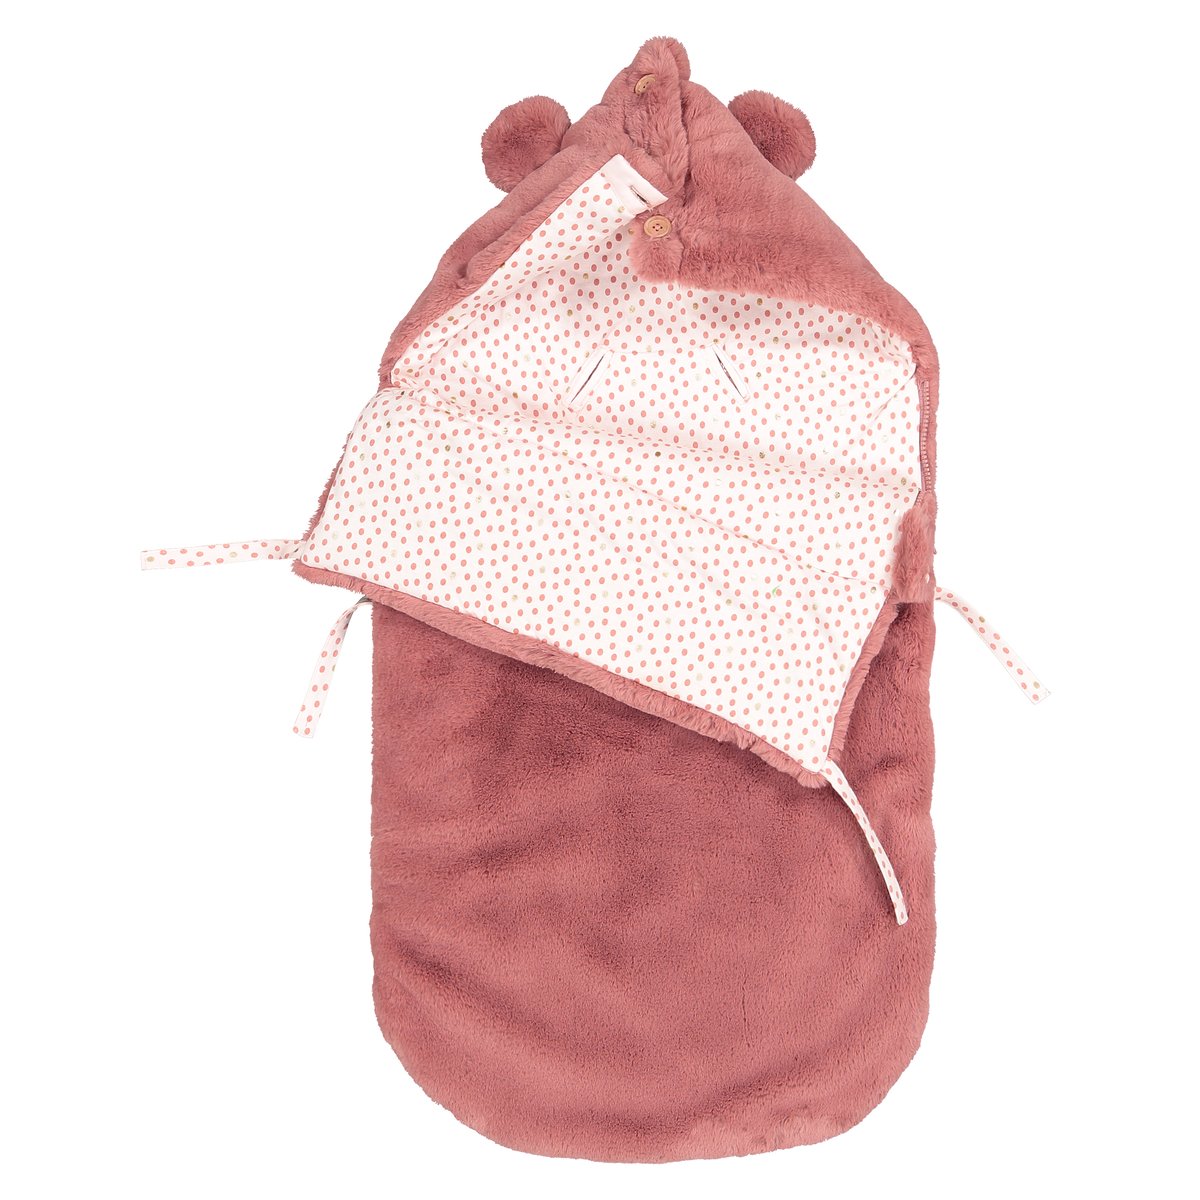 Конверт La Redoute Для новорожденного с капюшоном из искусственного меха единый размер розовый - фото 2